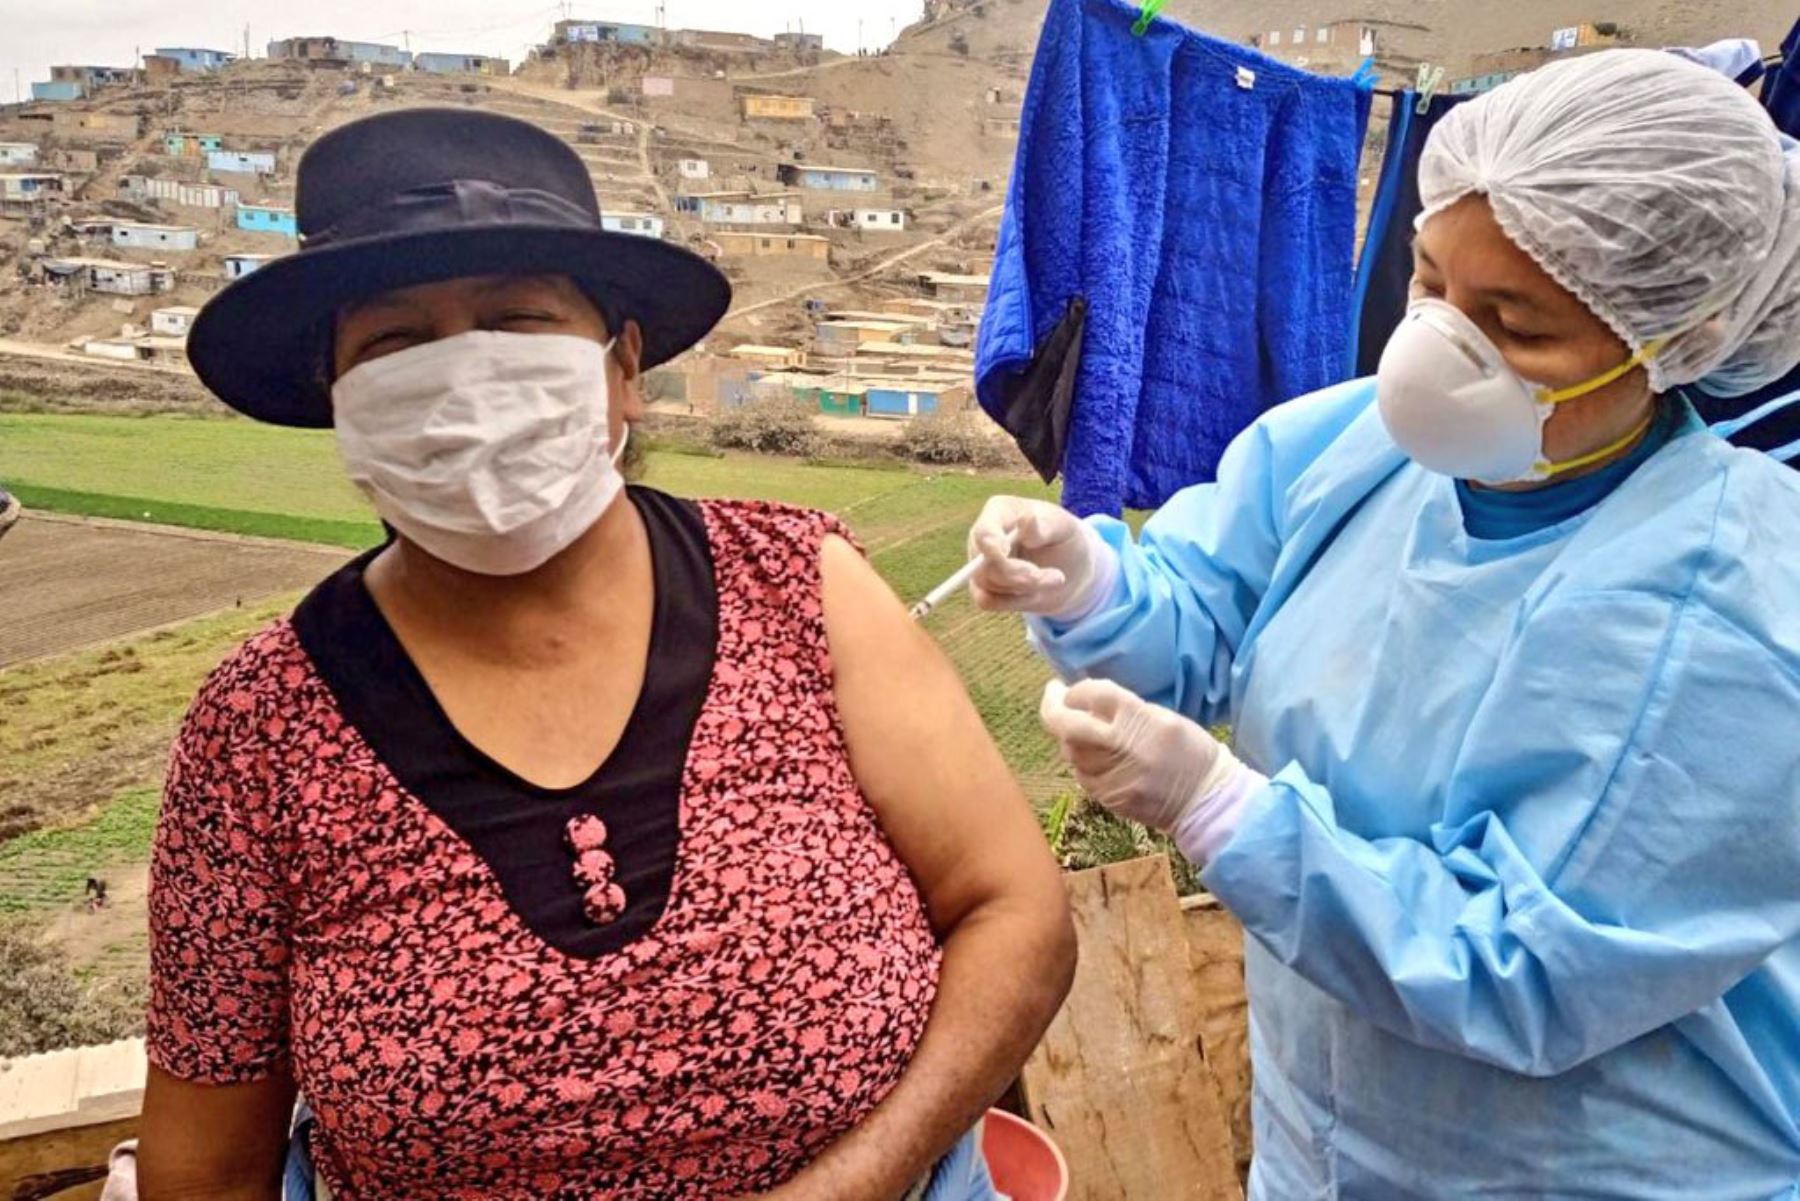 Ministerio de Salud a través de la Diris Lima Norte visita casa por casa para vacunación contra la covid - 19  en el Cerro Candela, en San Martín de Porres.
Foto: Minsa